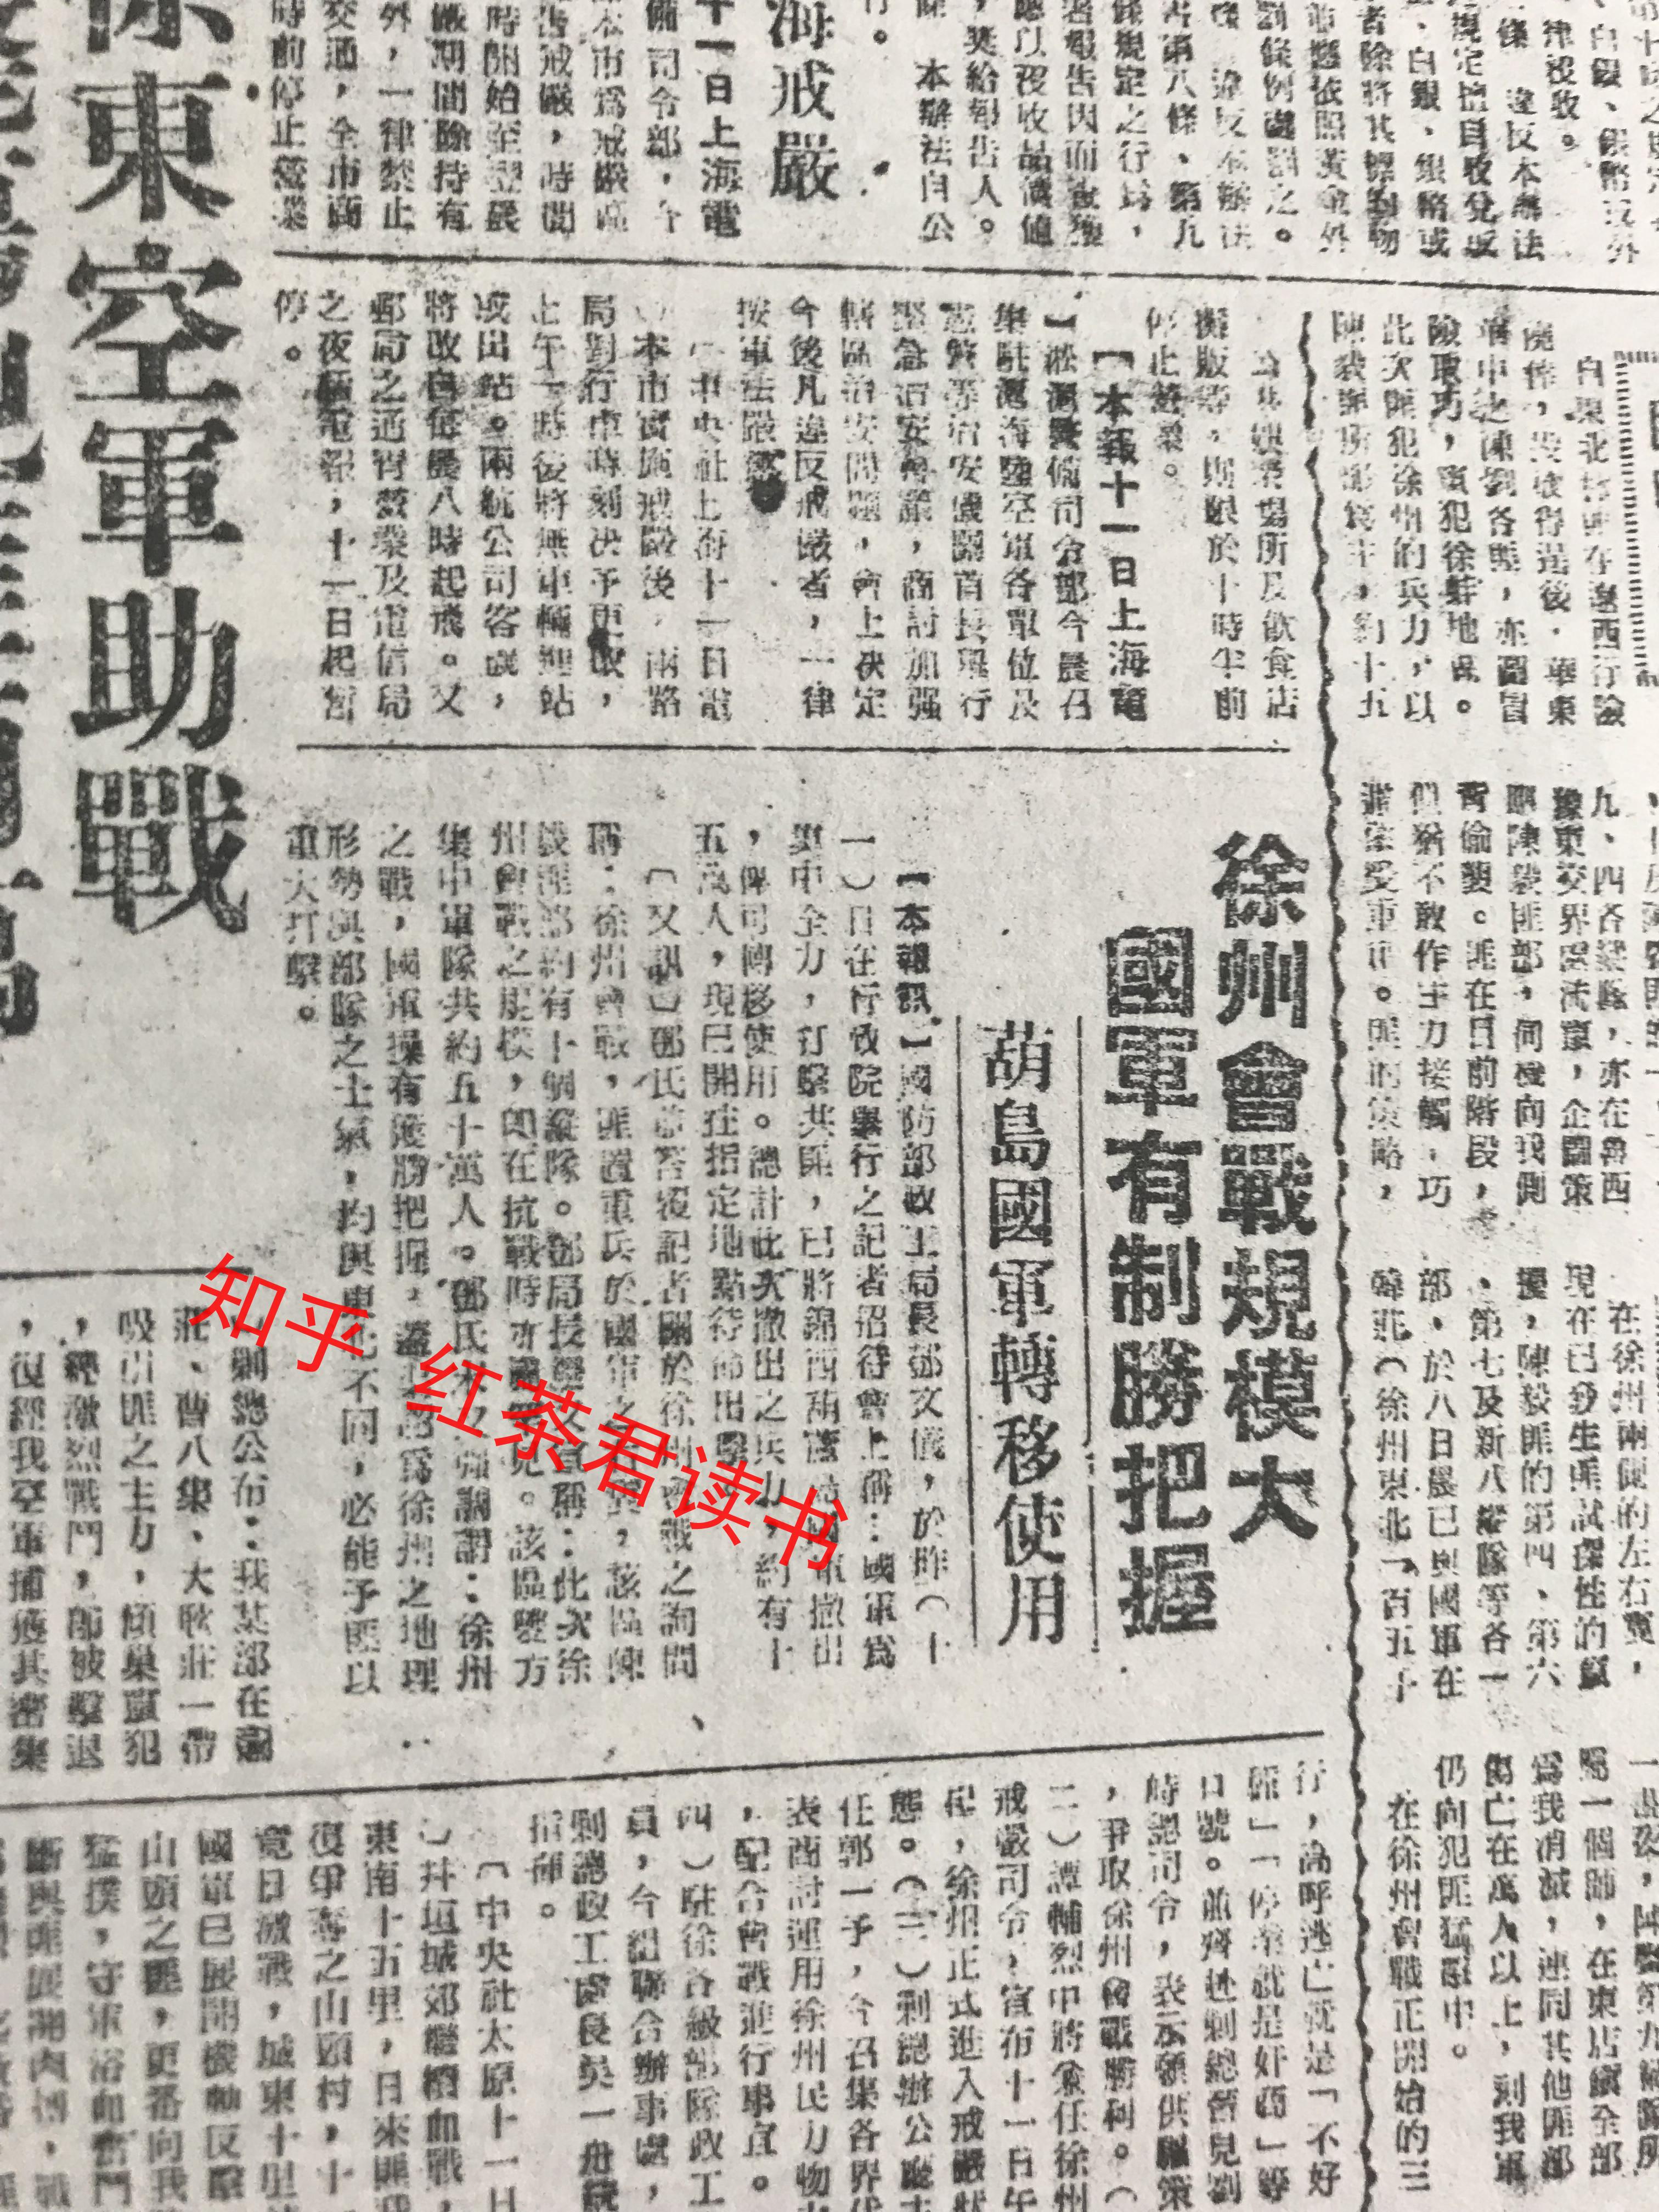 难得一见的民国报刊史料:国民党机关报《中央日报》对辽沈,淮海战役的